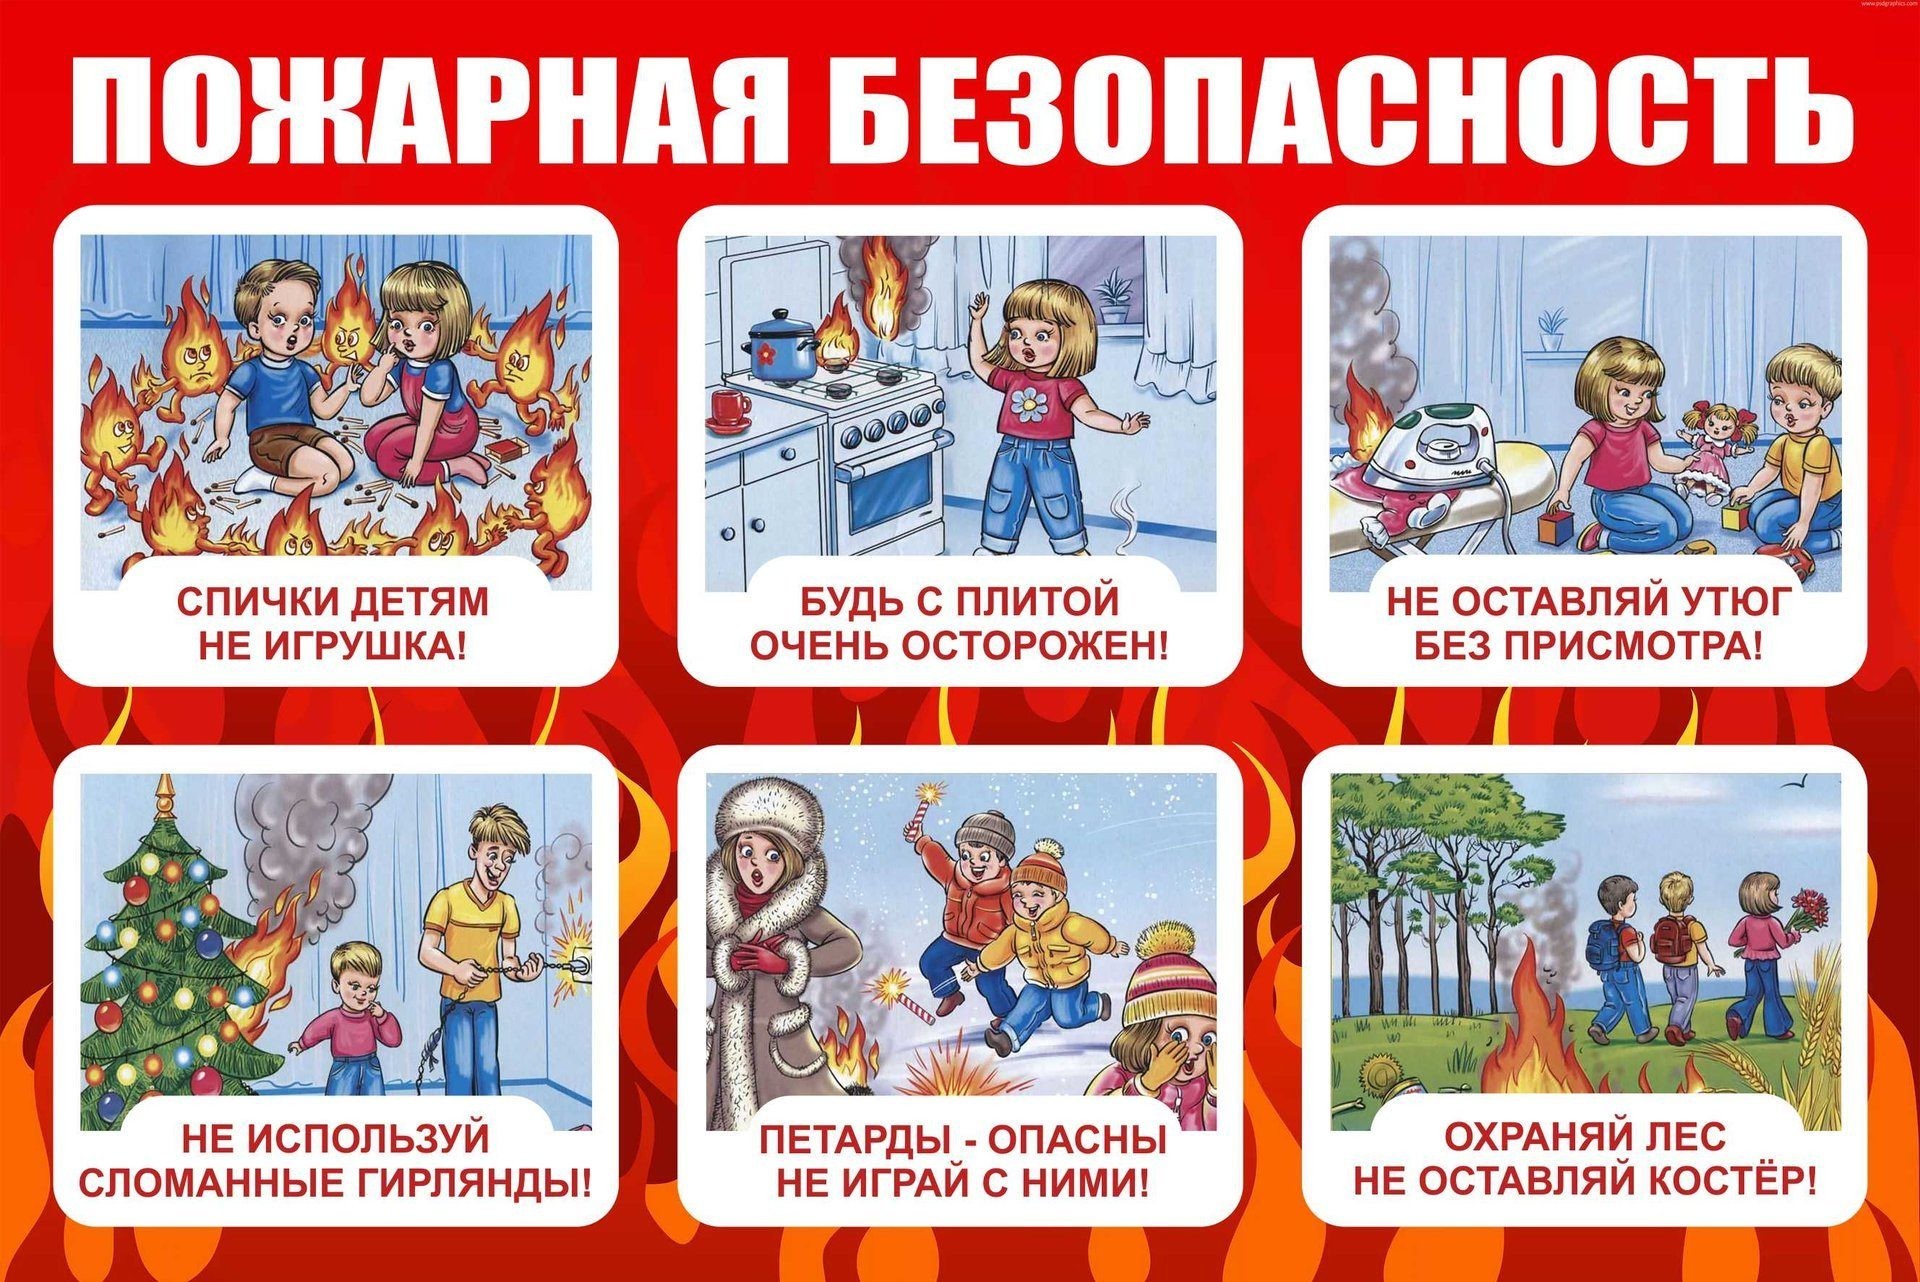 Картинки правила безопасности при пожаре